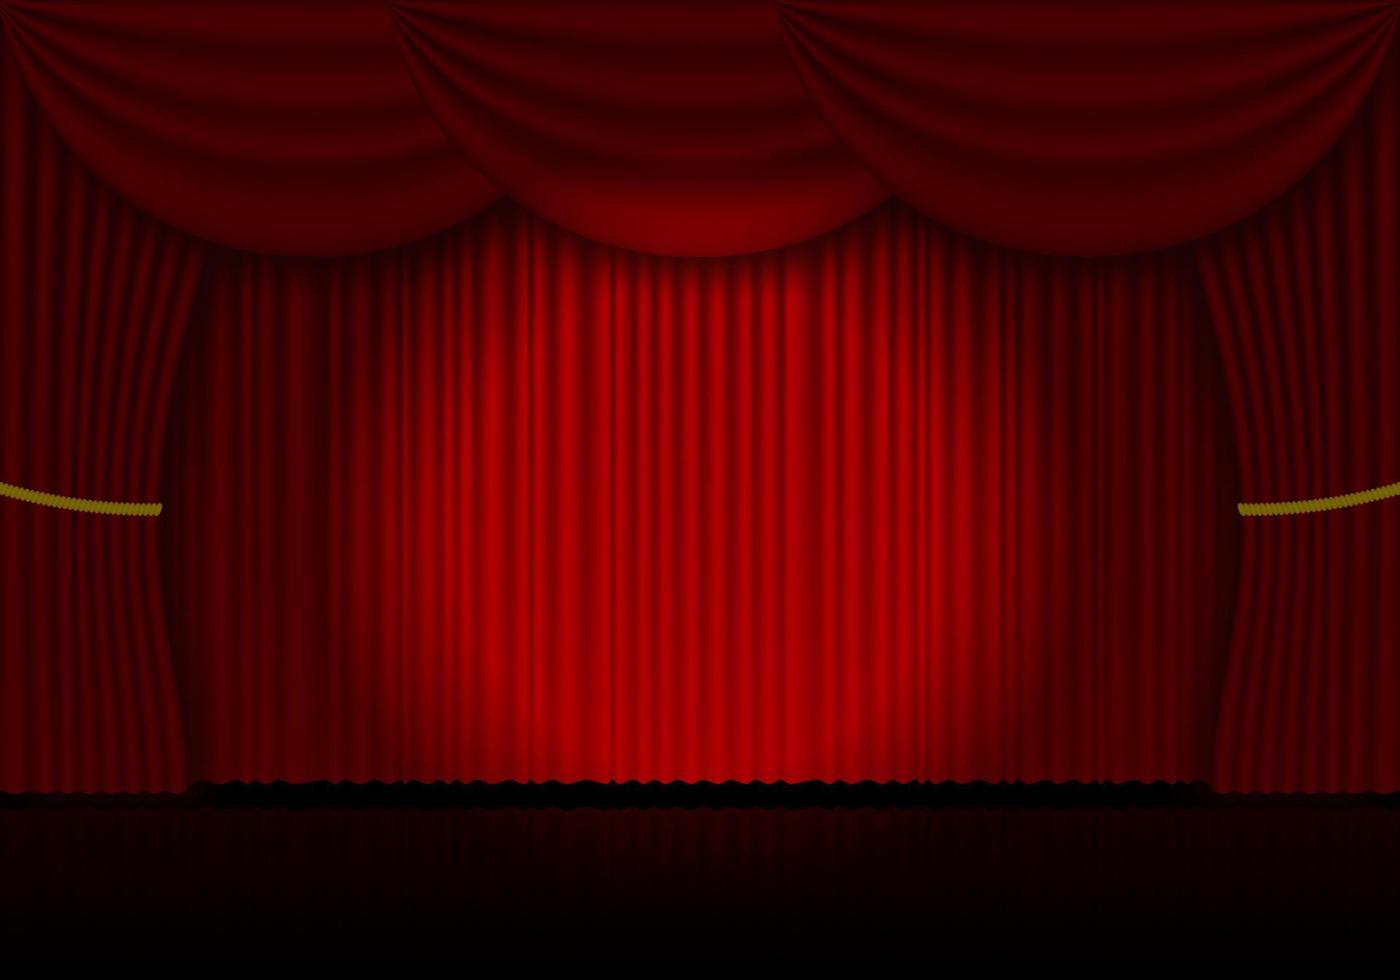 röd ridå opera, bio eller teater skede draperier. strålkastare på stängd sammet gardiner bakgrund. vektor illustration